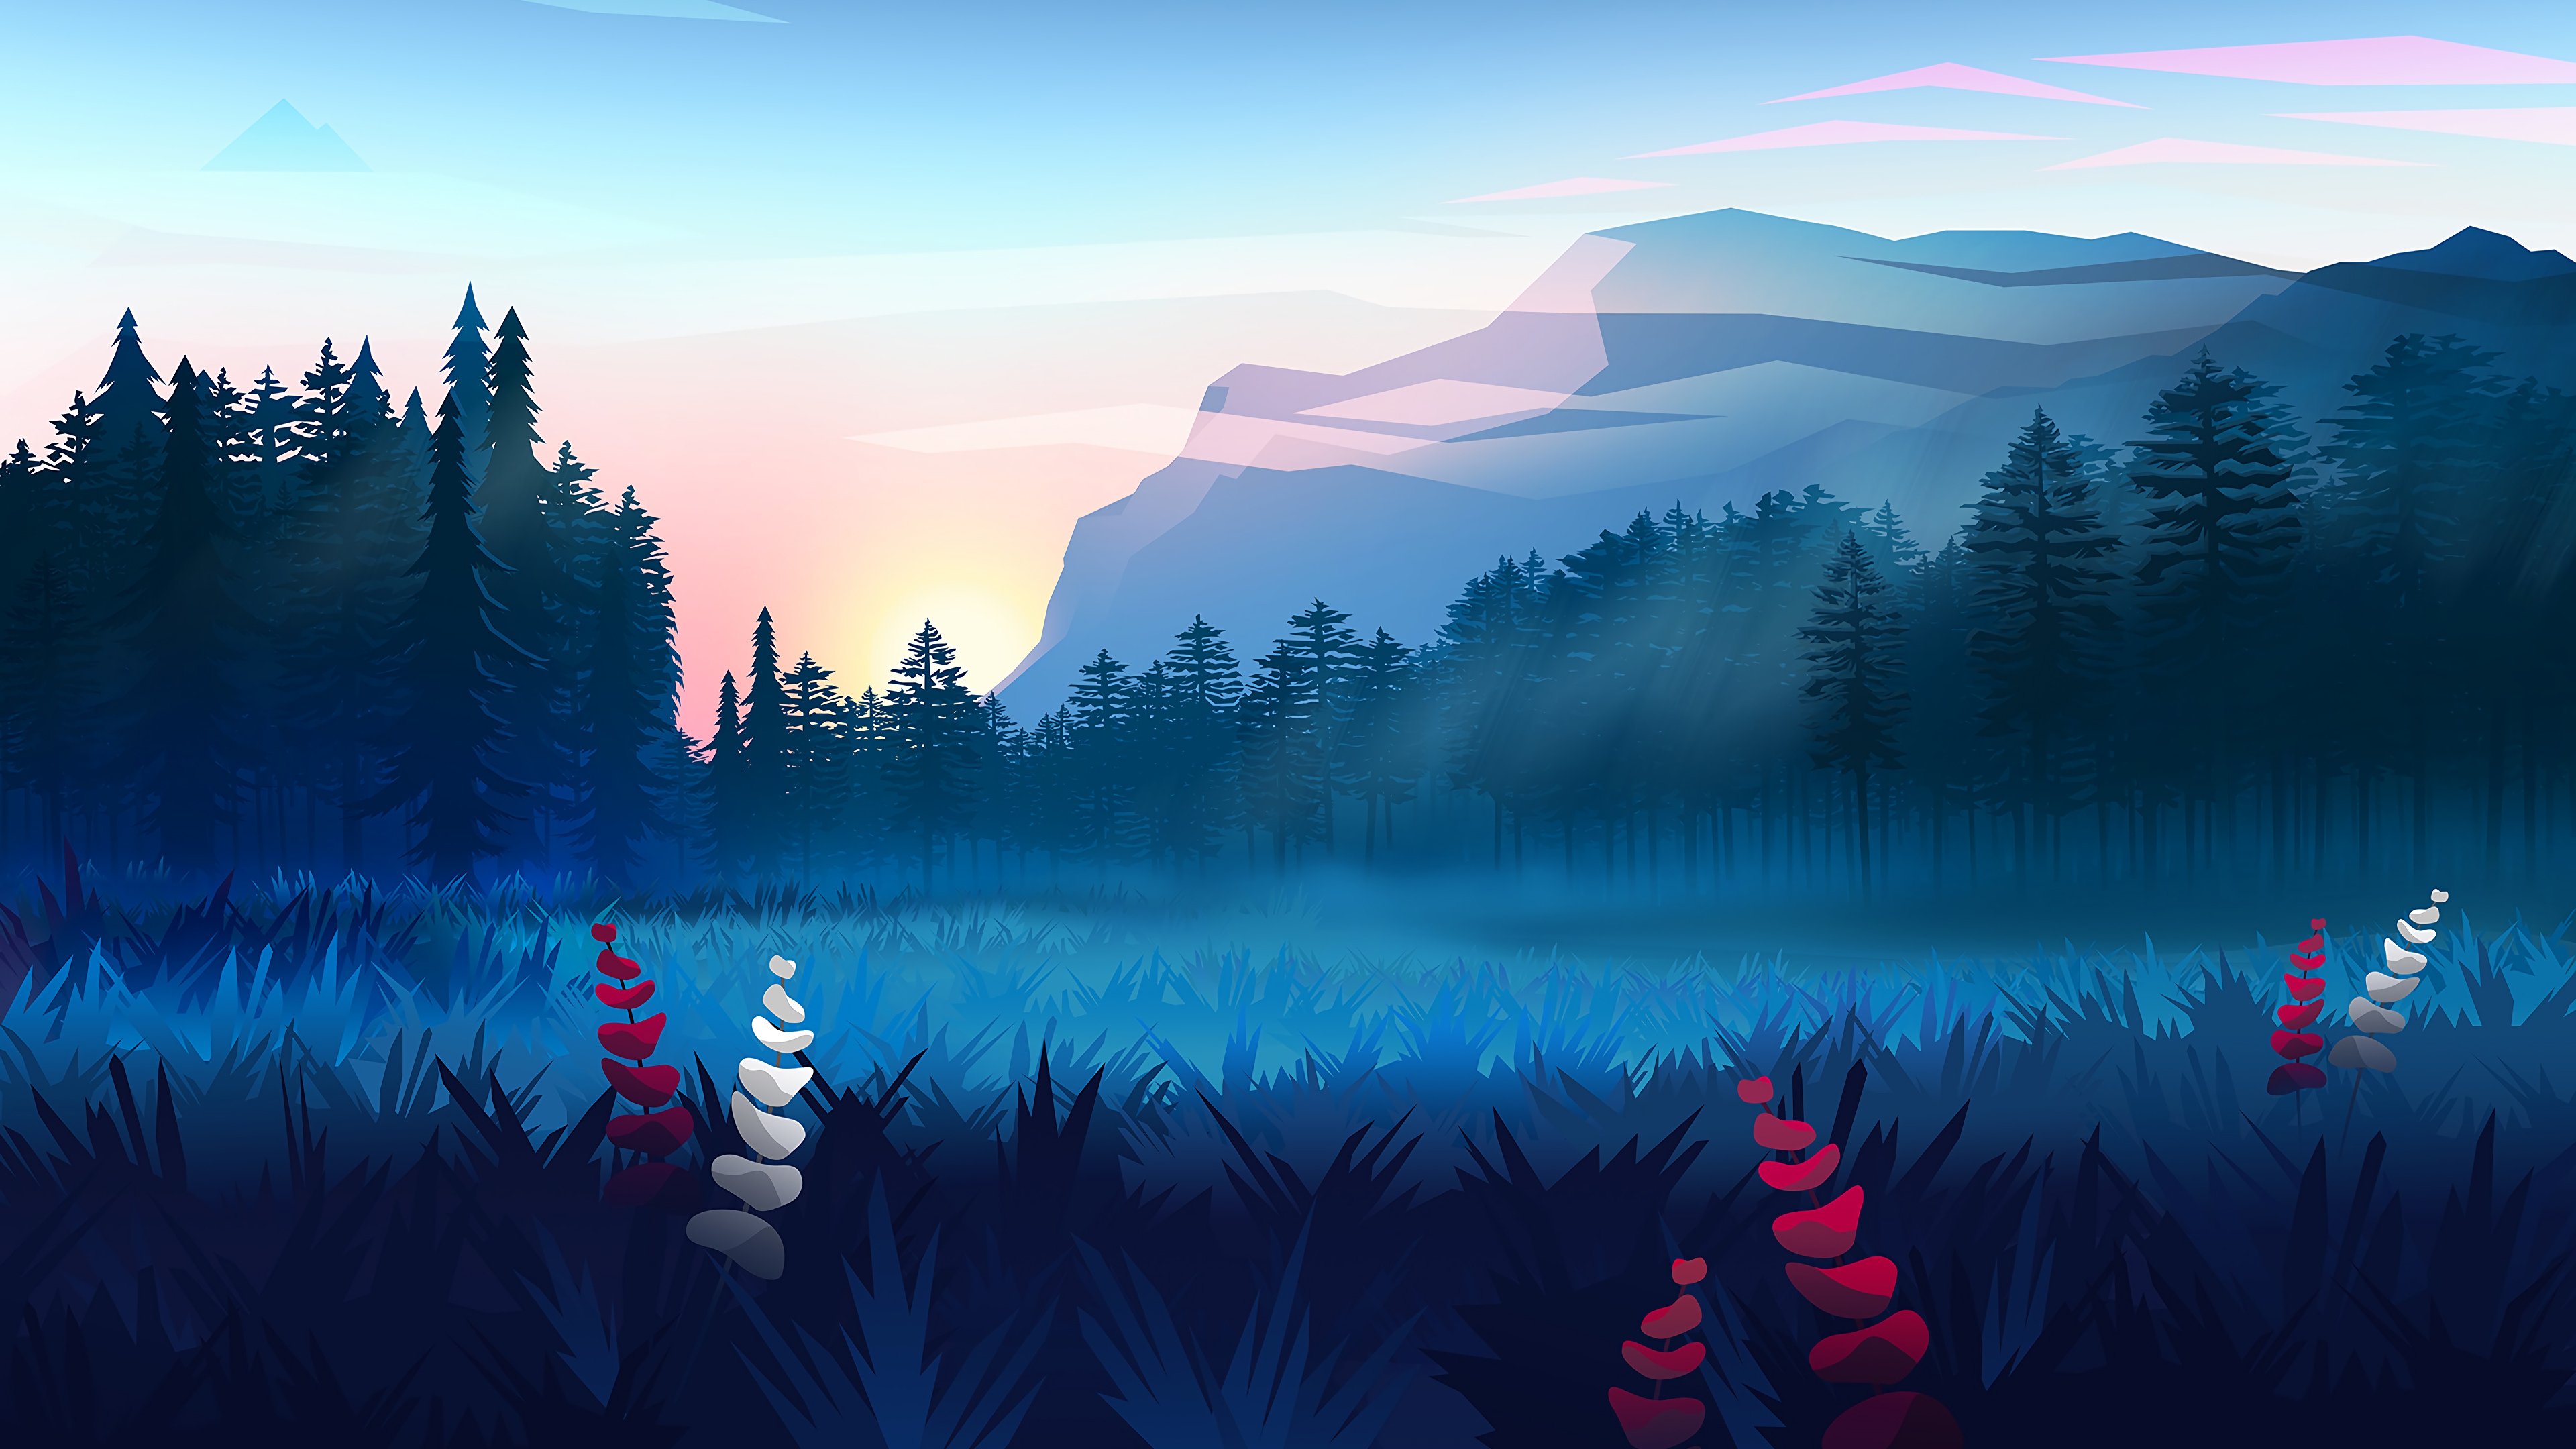 Fondos de pantalla Paisaje de montañas en el bosque Diseño minimalista